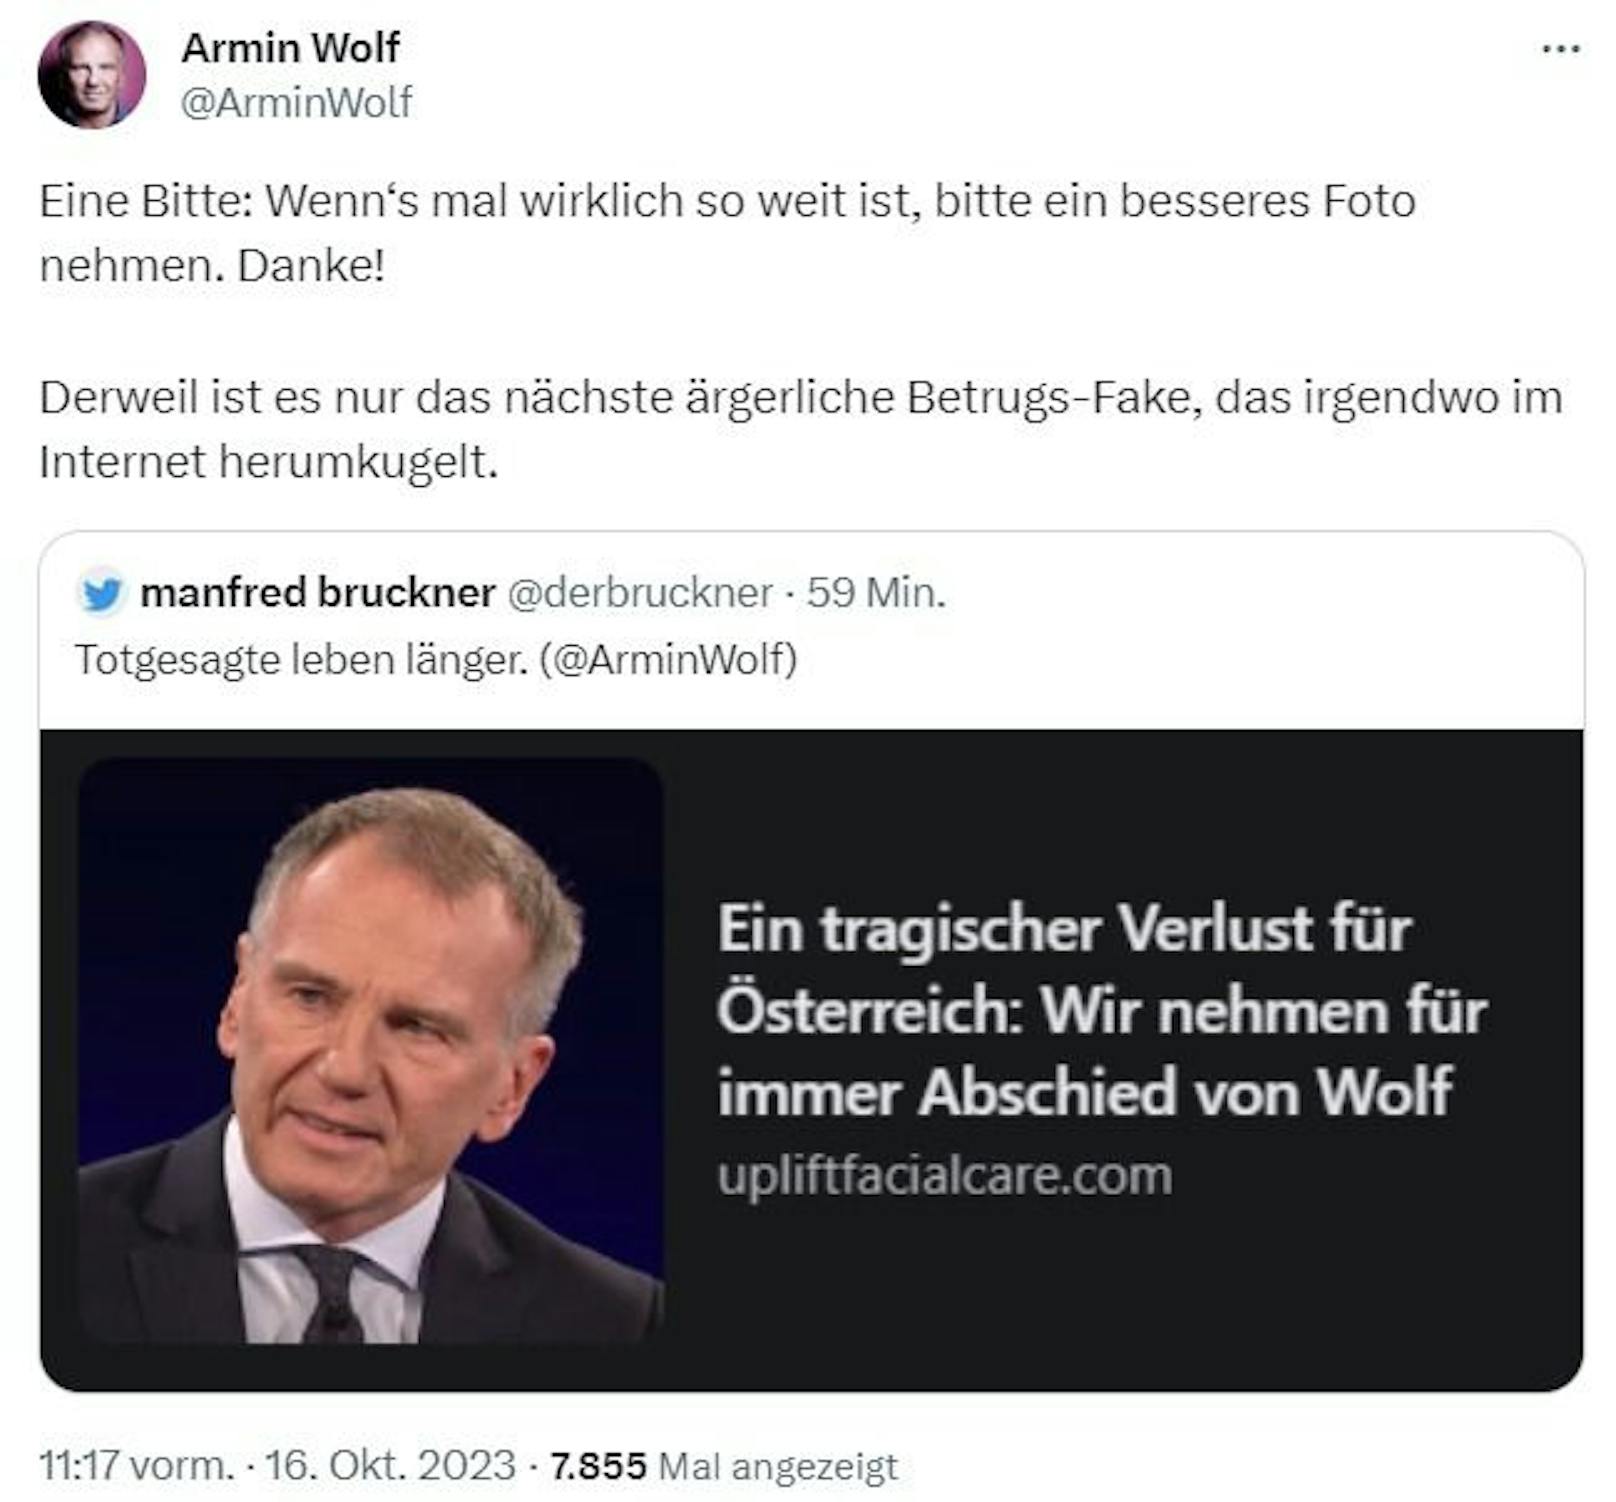 Armin Wolf wird von Internetbetrügern totgesagt.